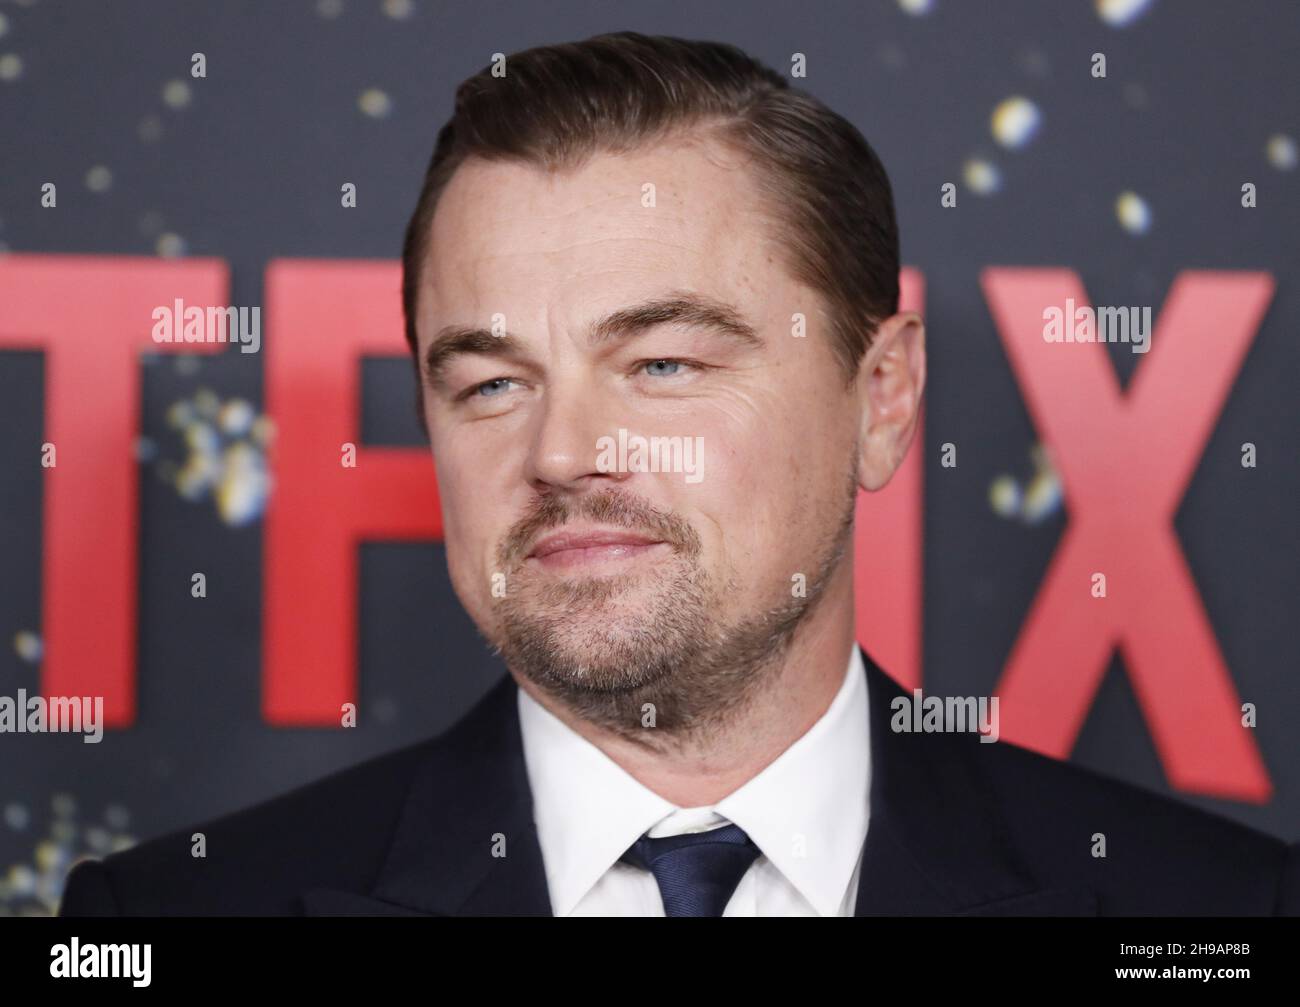 New York, Usa. 05th Dez 2021. Leonardo DiCaprio kommt auf dem roten Teppich bei der Weltpremiere von Netflix's "Don't Look Up" am Sonntag, 05. Dezember 2021 in New York City an. Foto von John Angelillo/UPI Credit: UPI/Alamy Live News Stockfoto